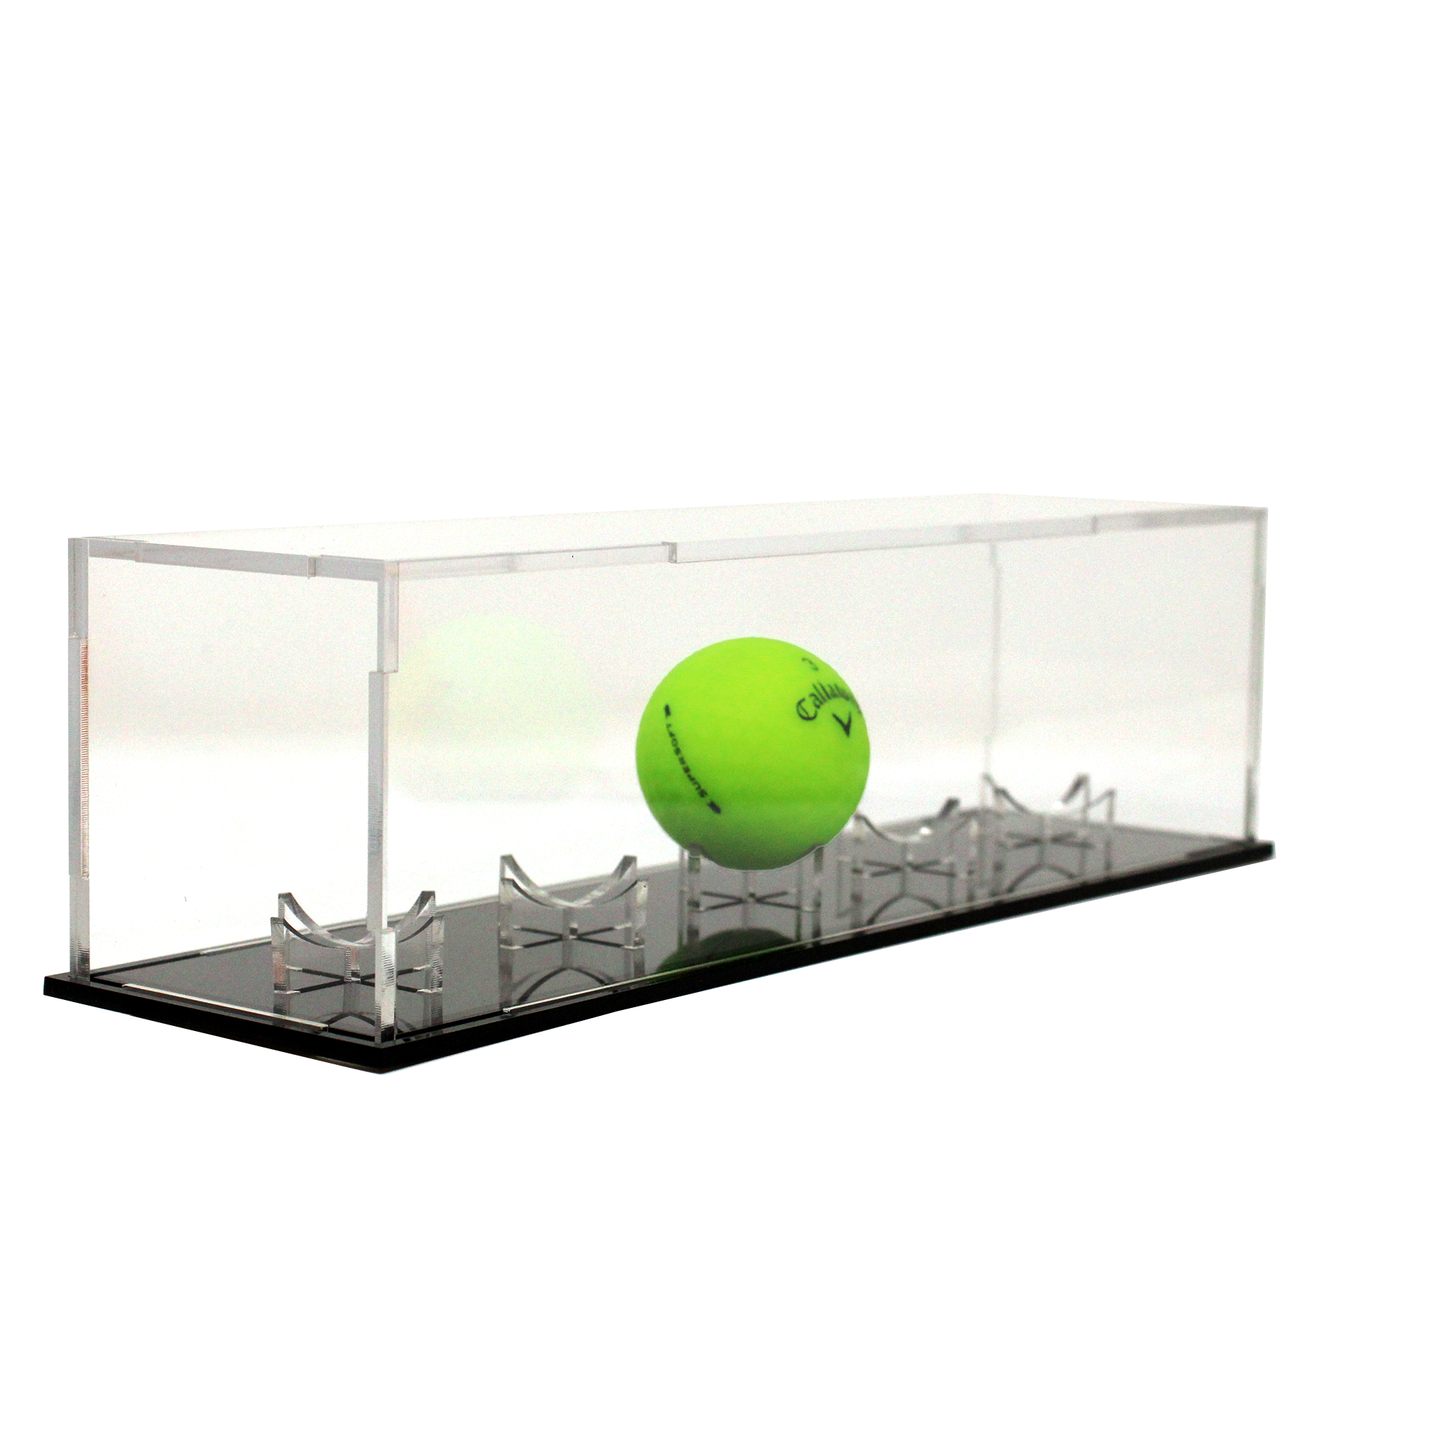 Single golf ball display